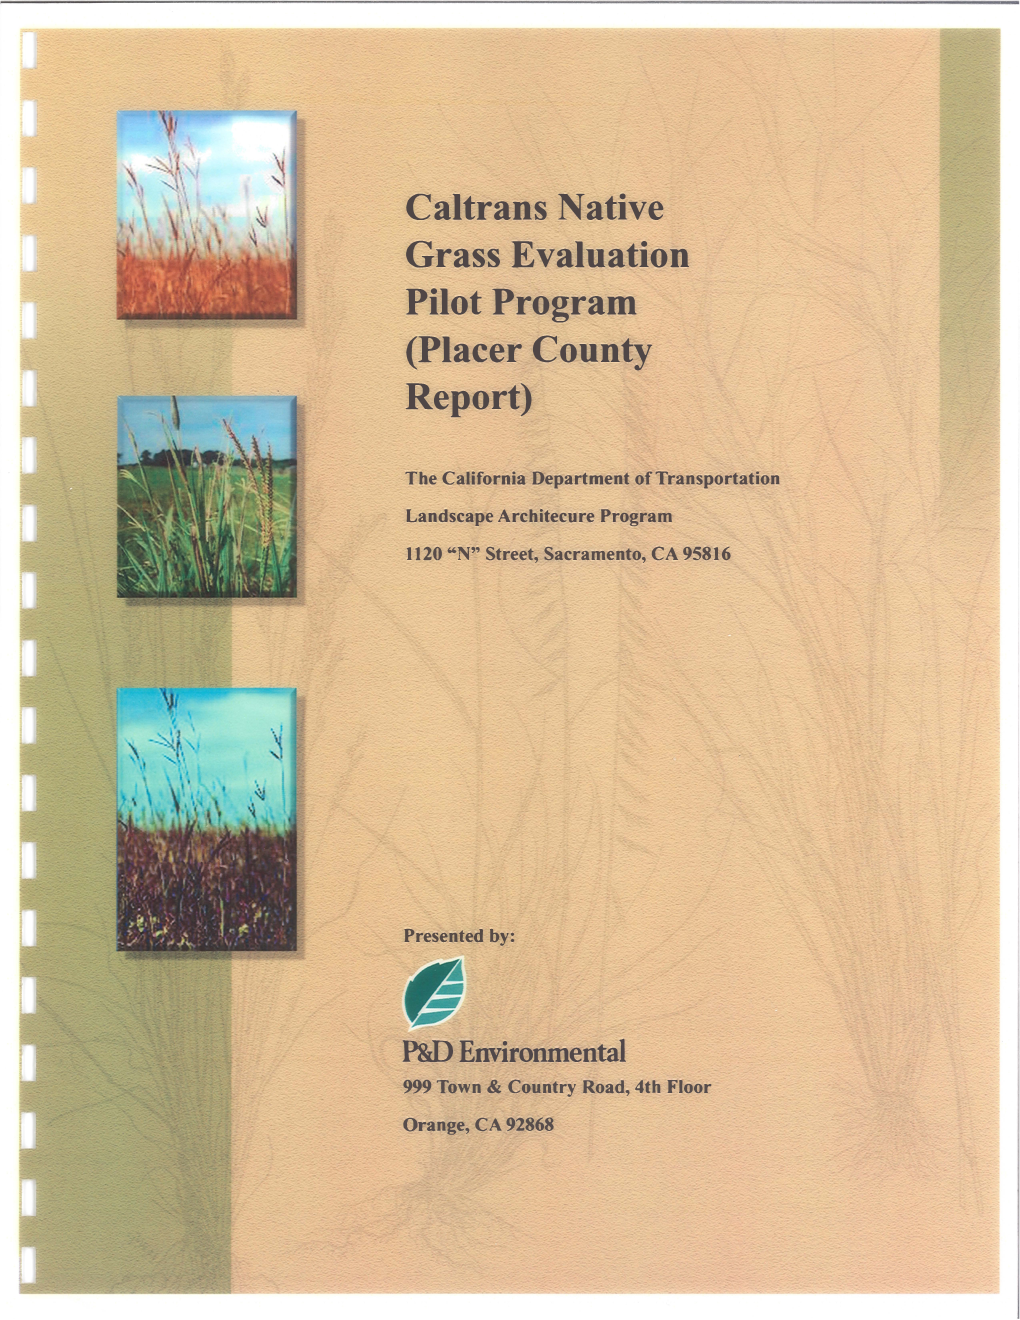 Caltrans Native Grass Evaluation Pilot Program (Placer County Report)